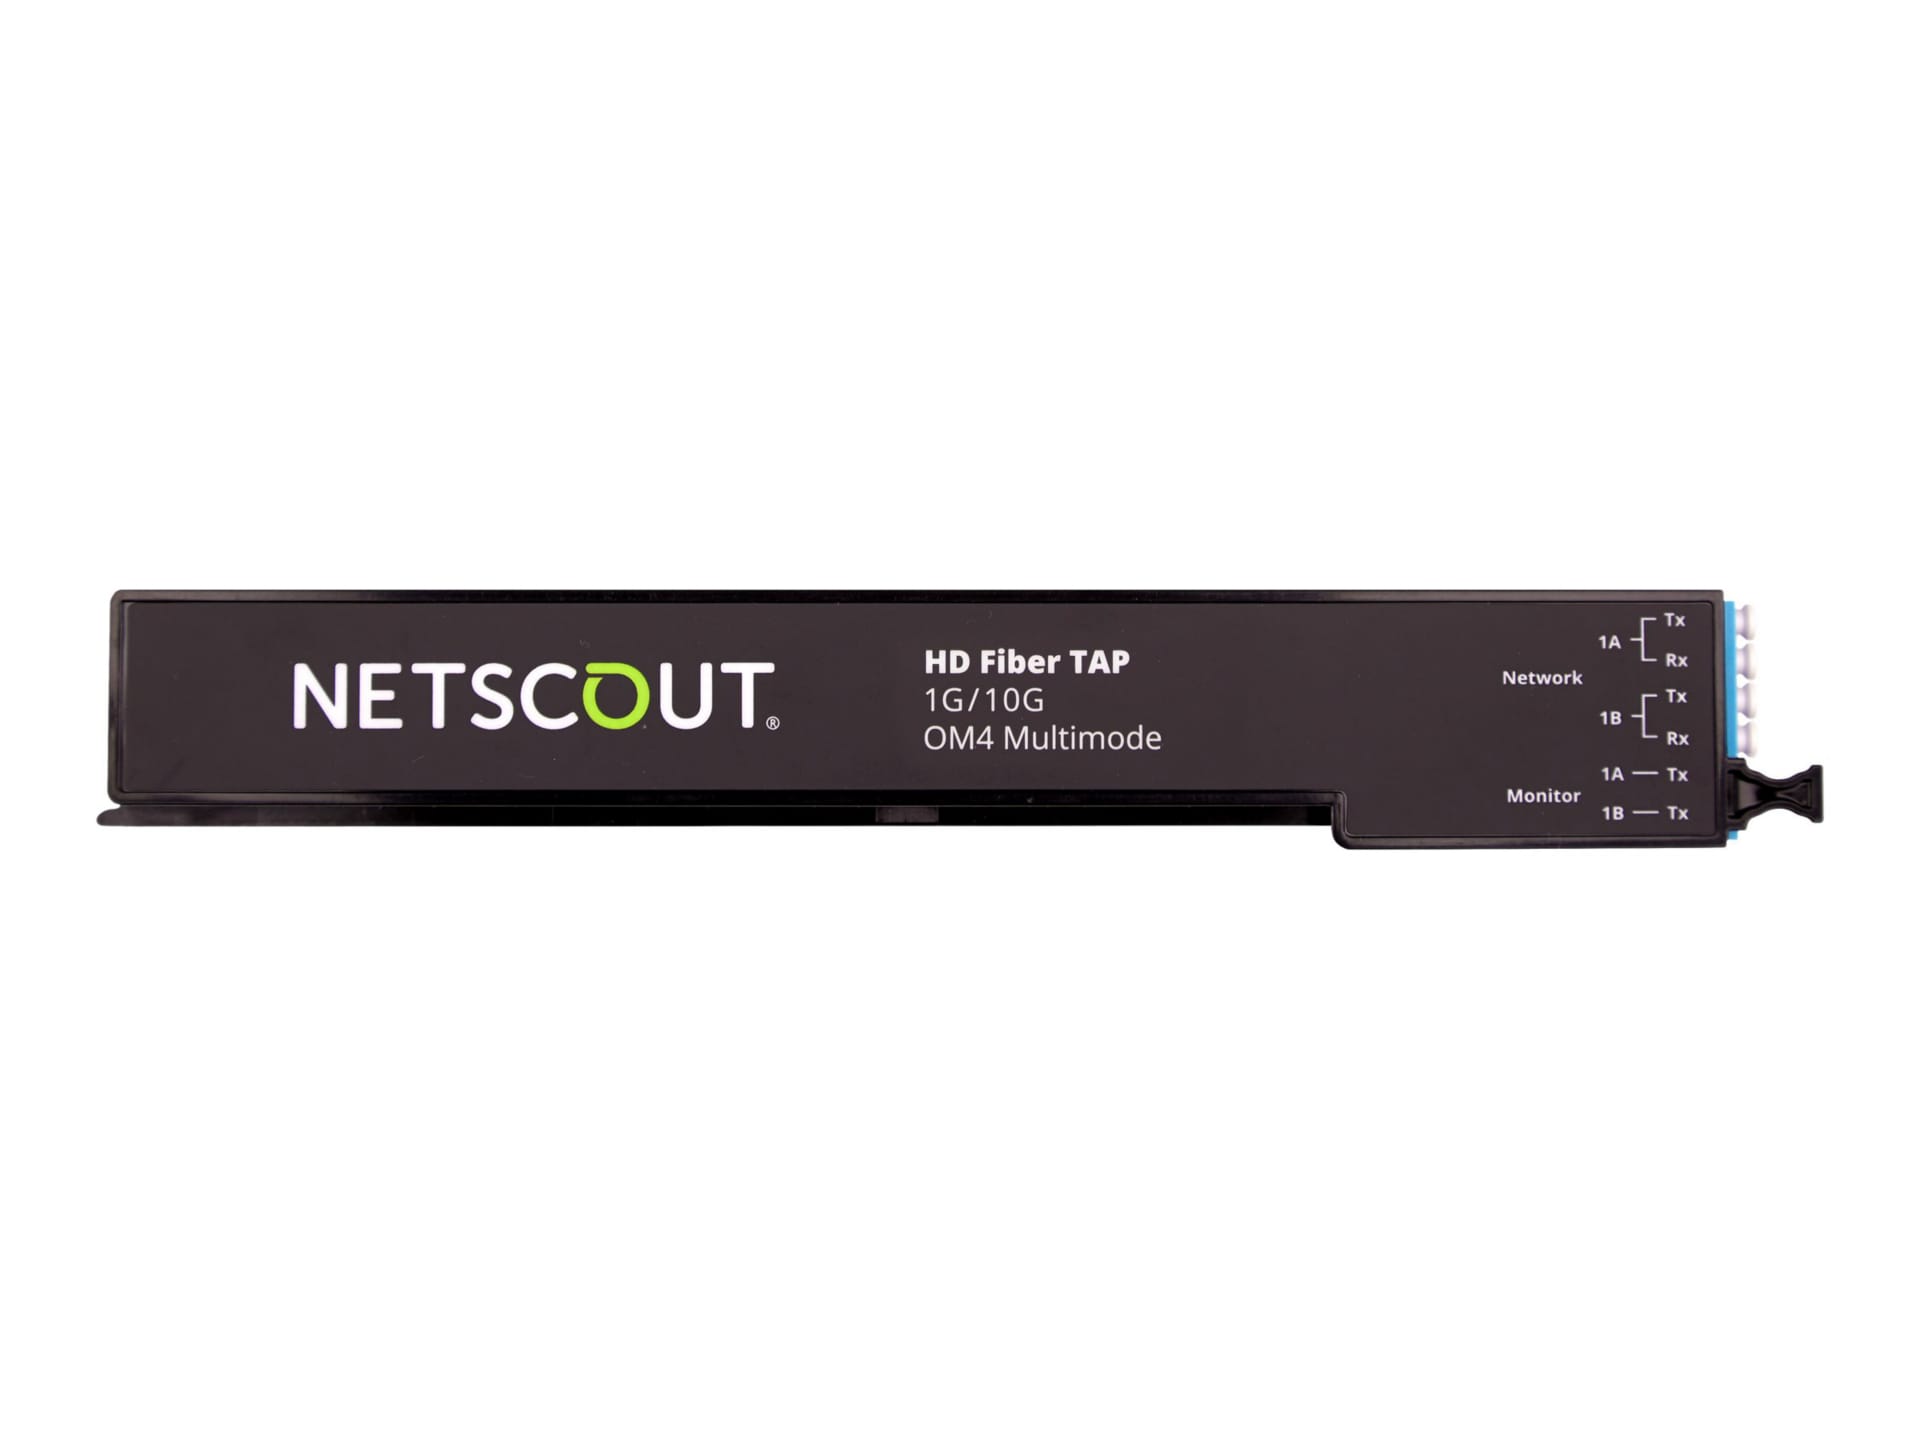 NetScout HD Fiber TAP 1 Line/Link Fiber Ethernet Transceiver